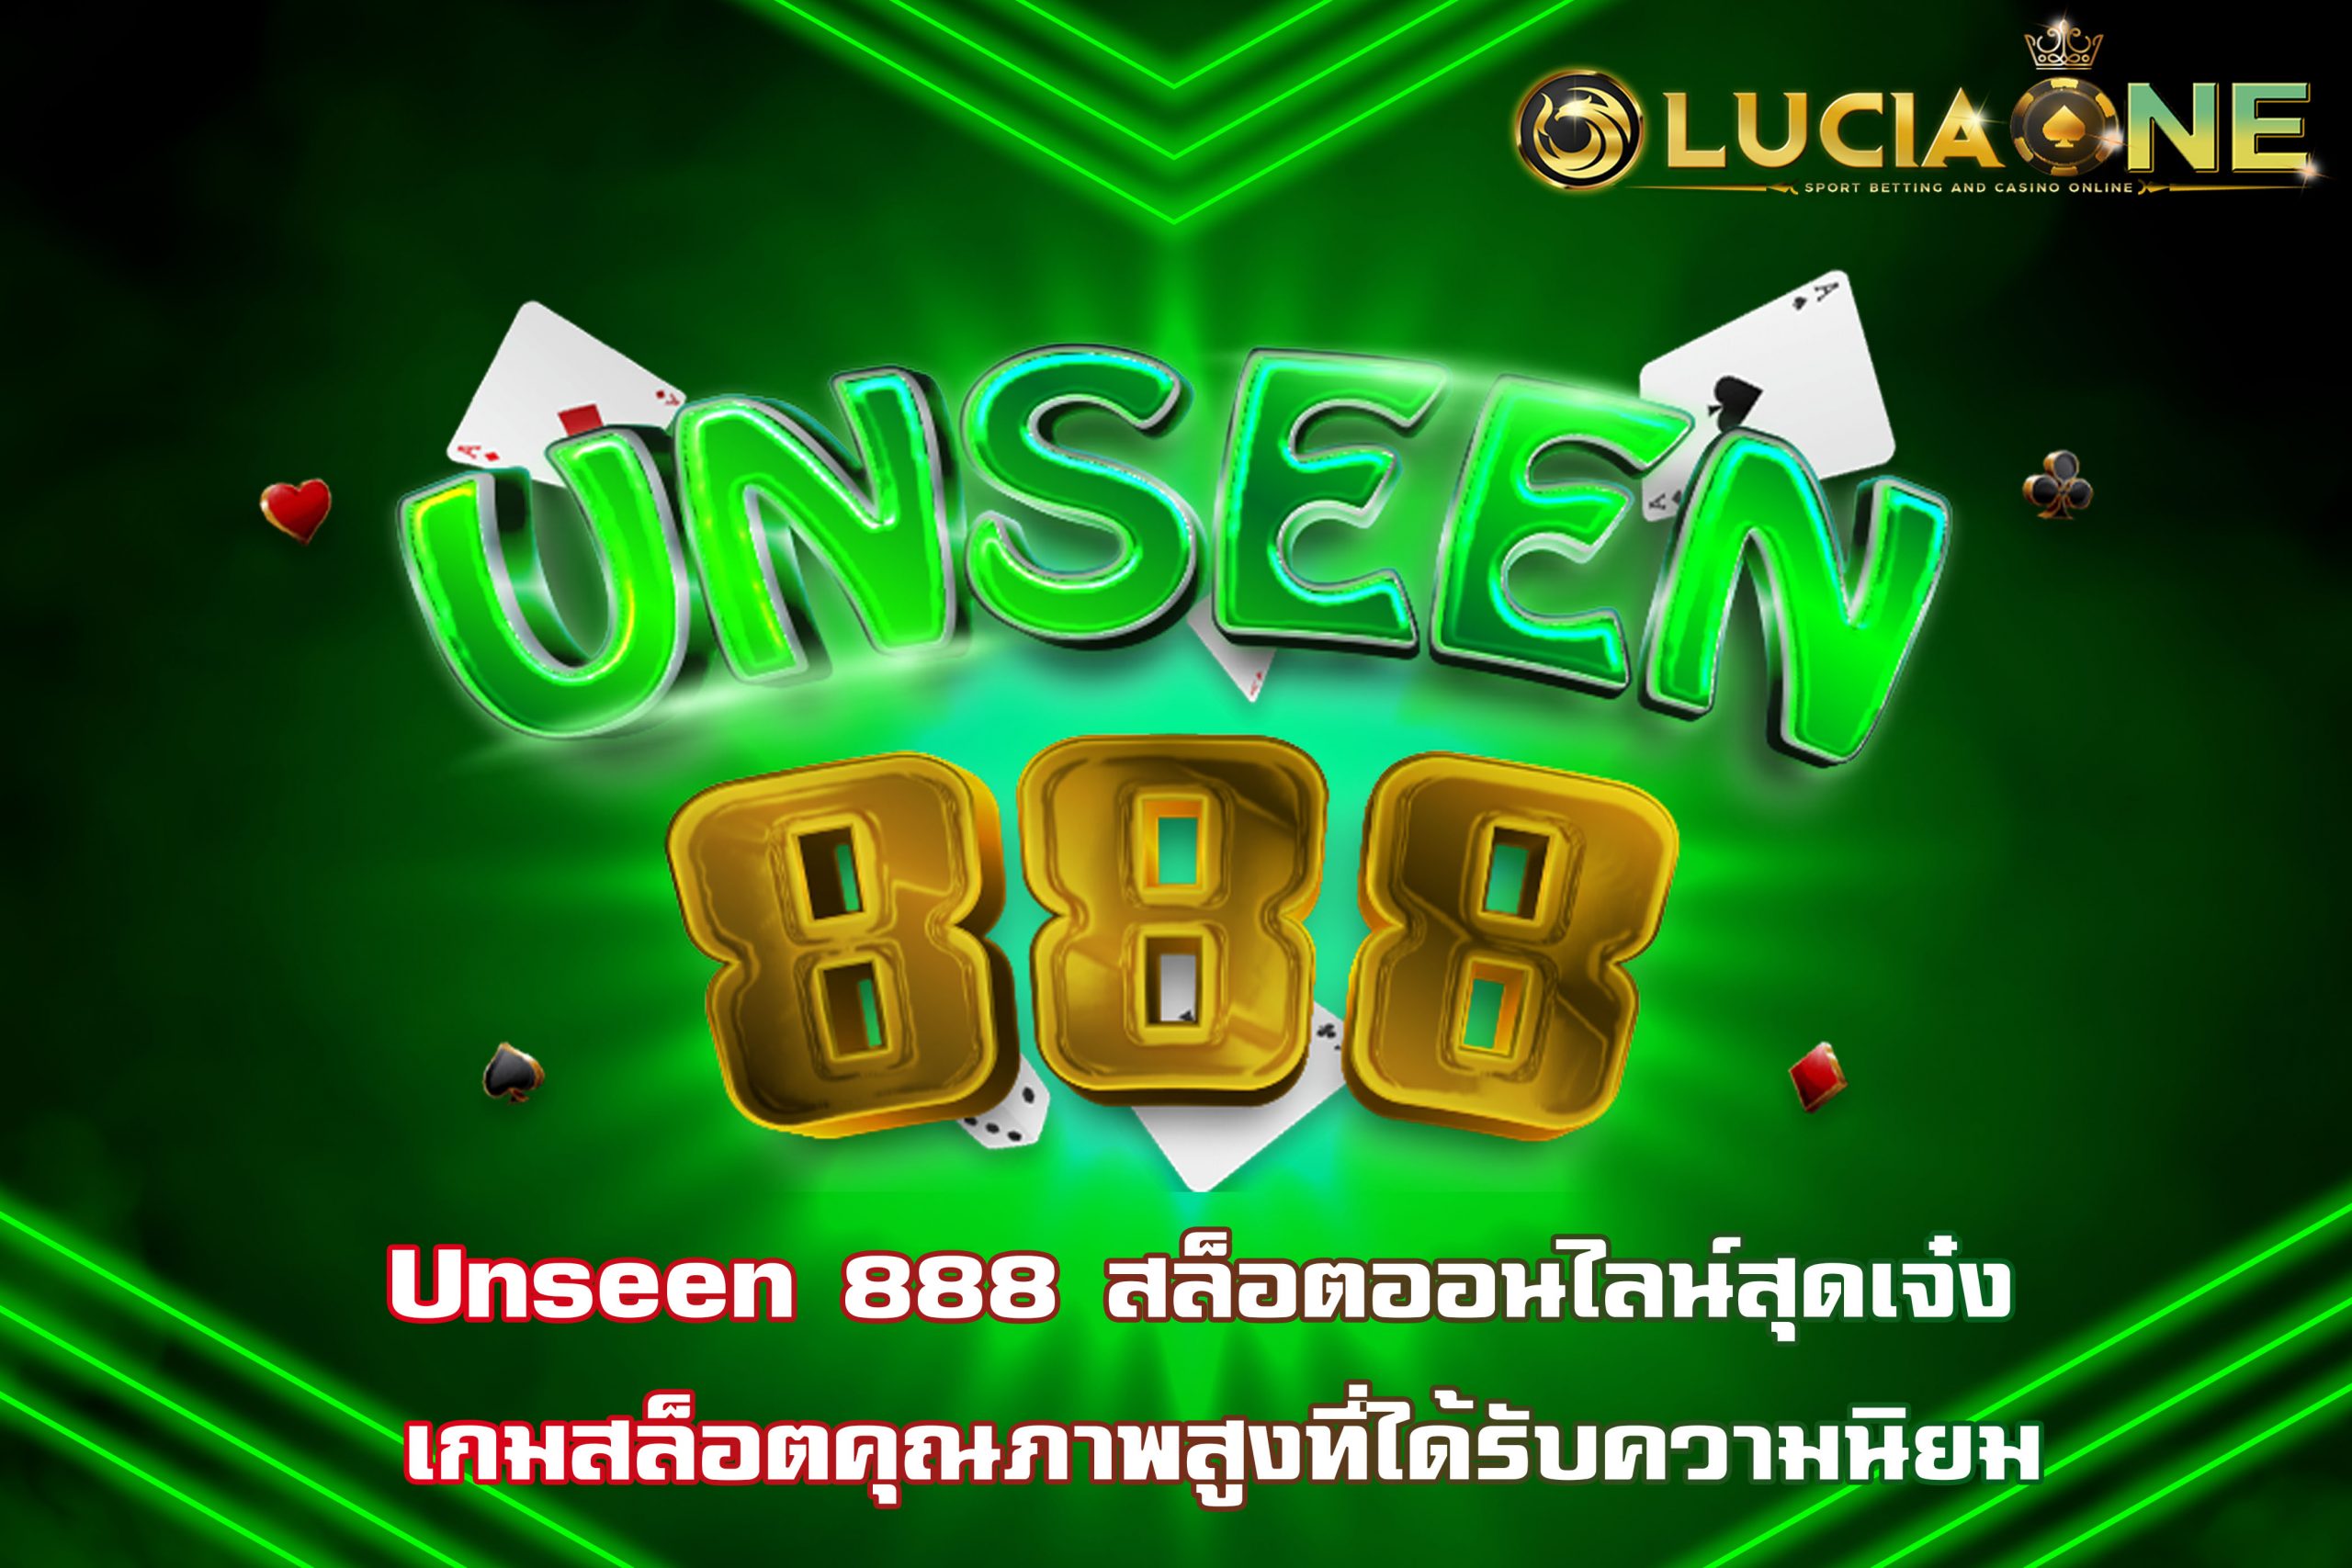 Unseen 888